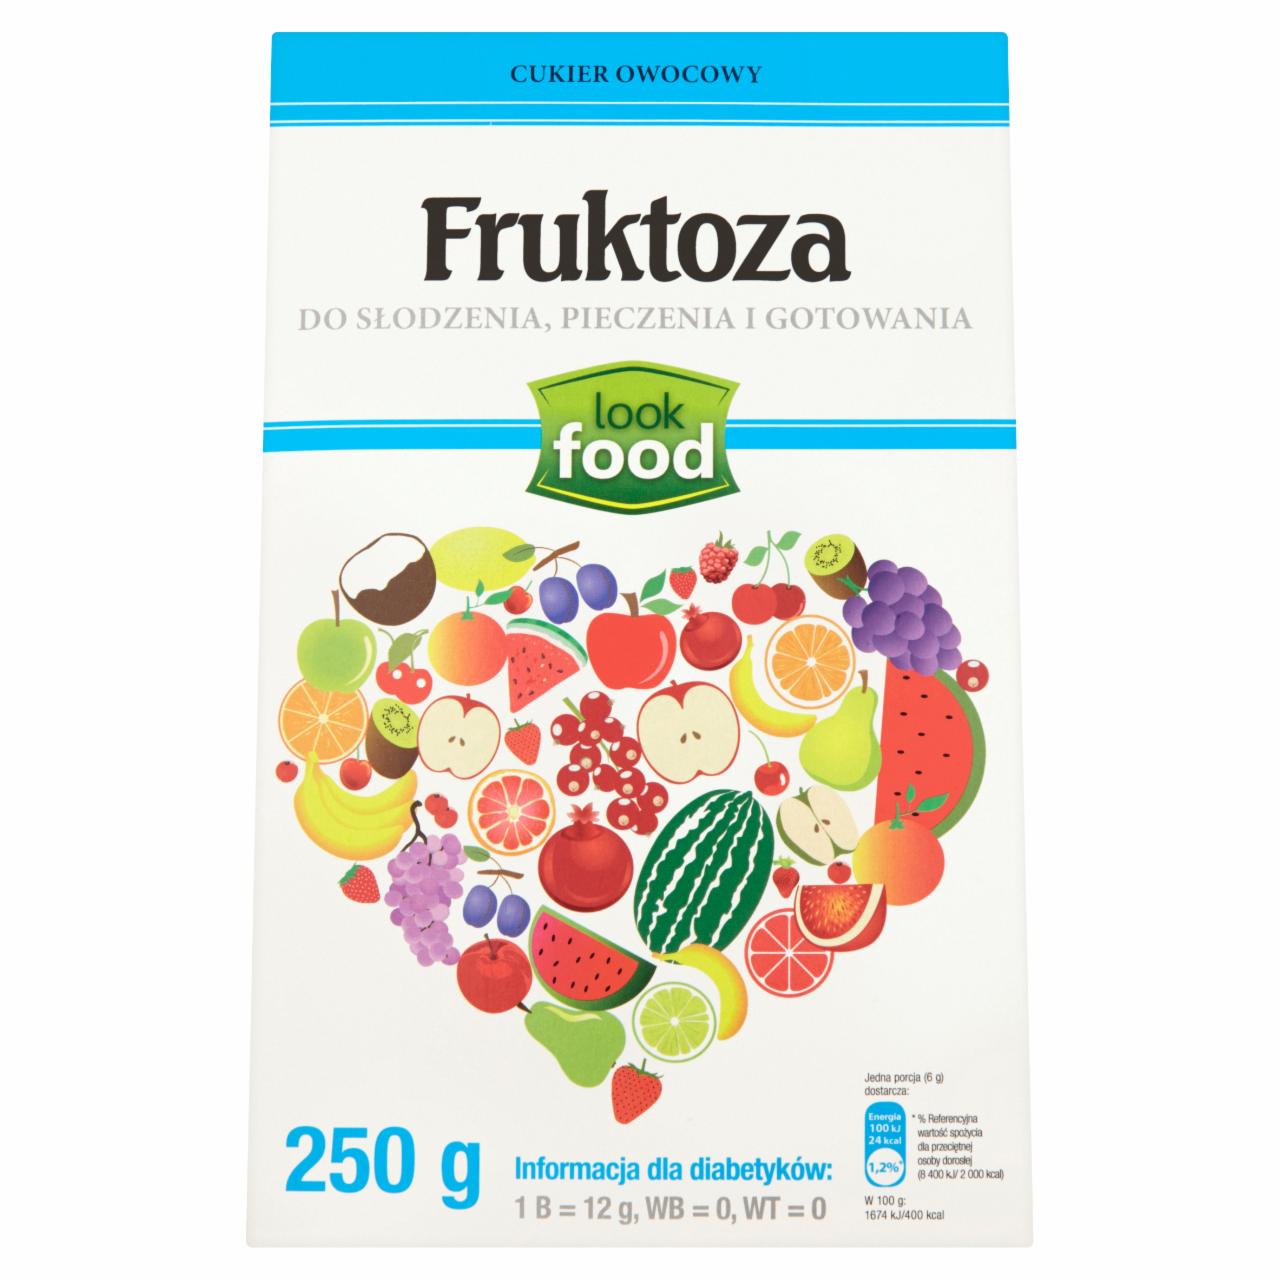 Zdjęcia - Look Food Fruktoza 250 g